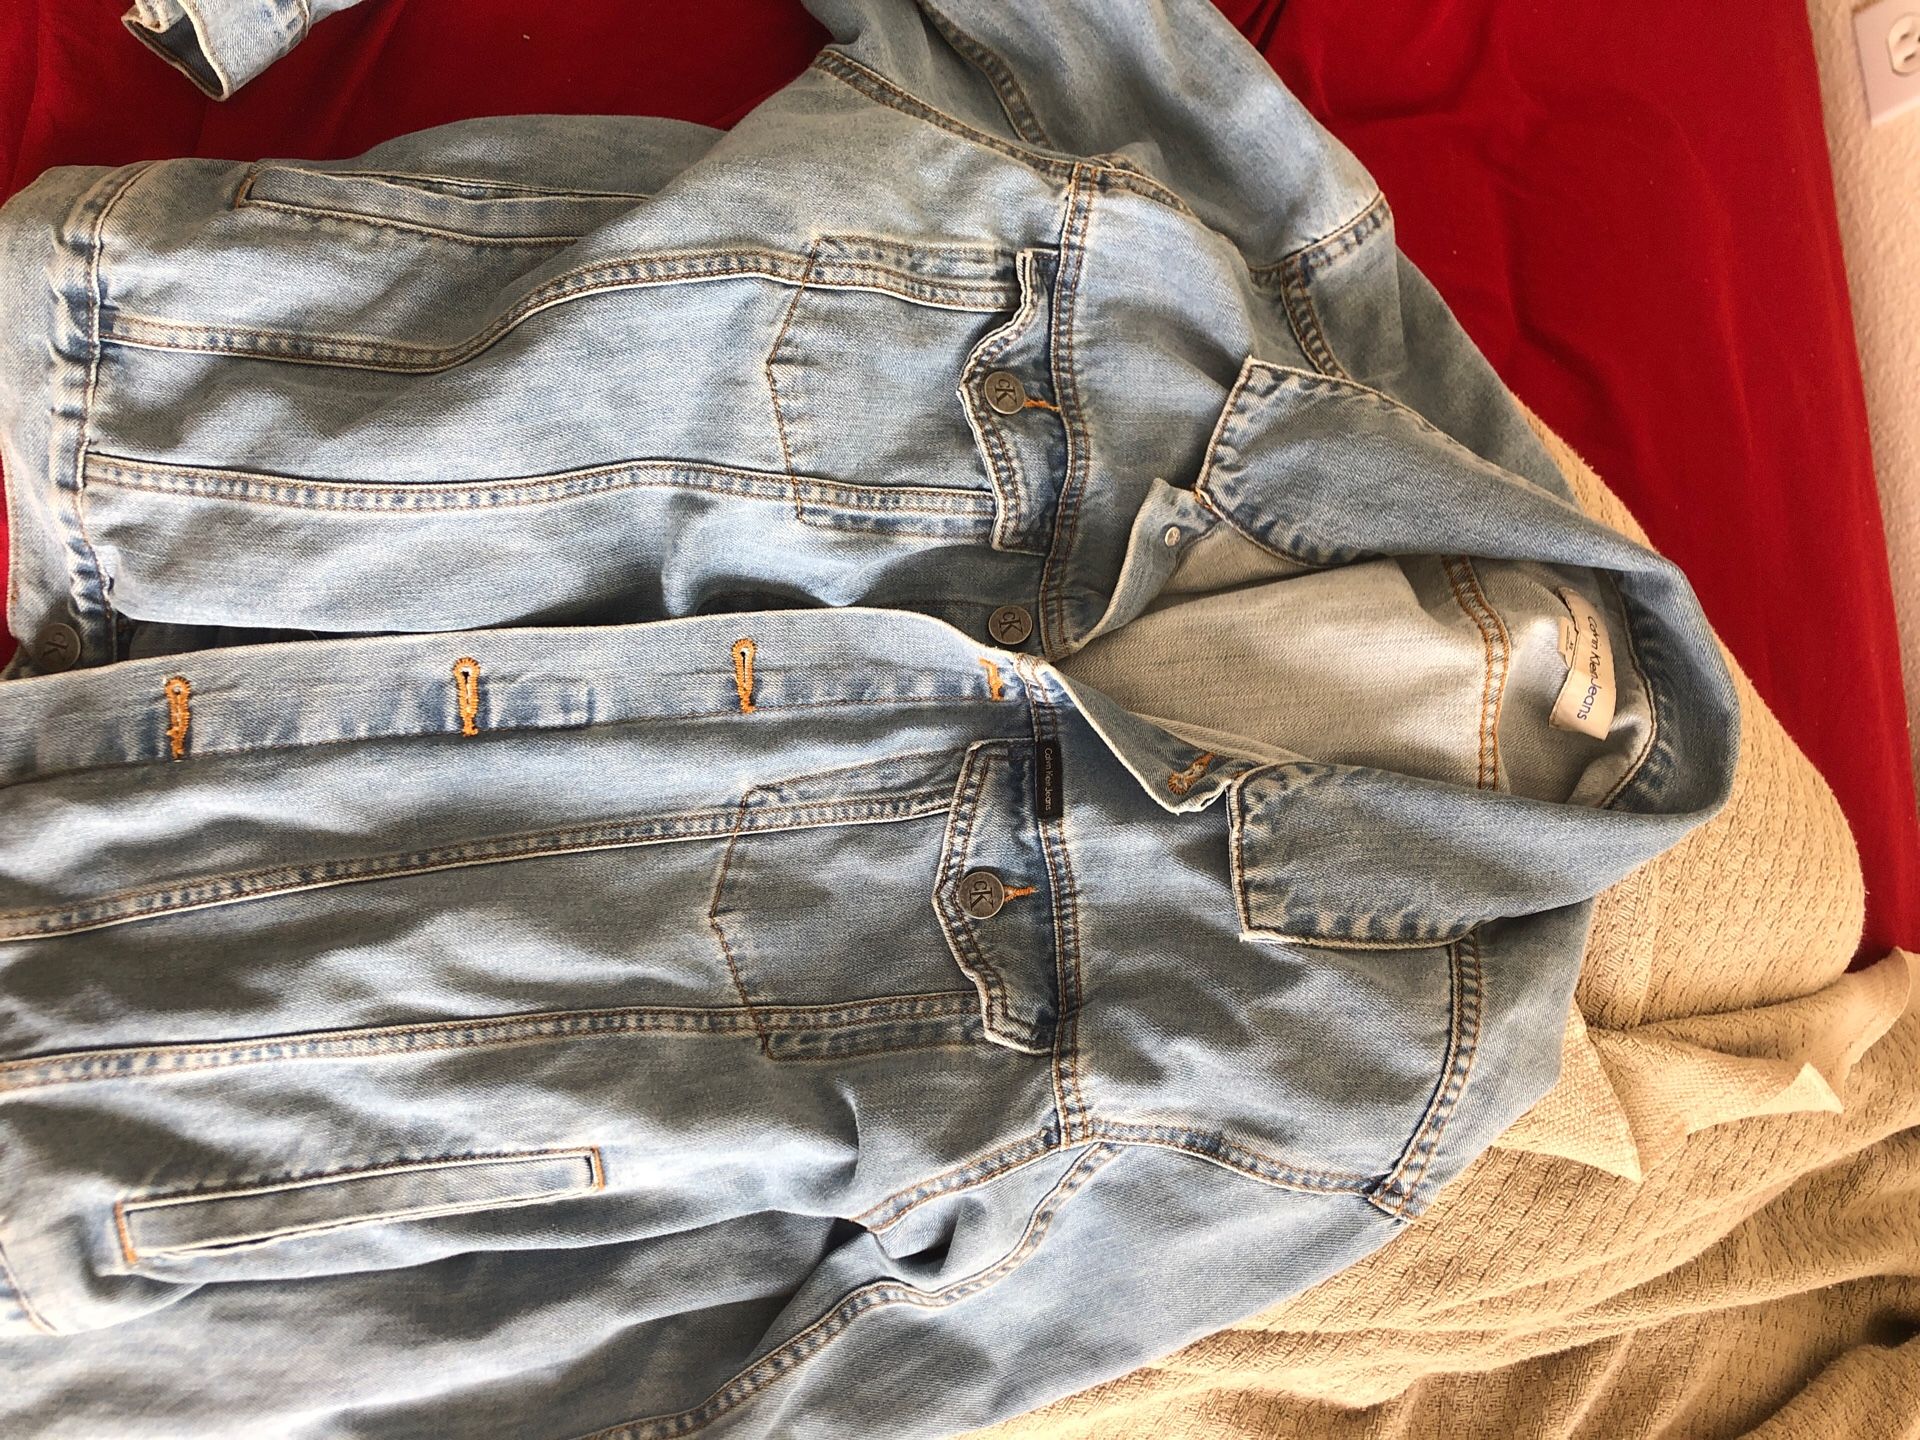 Calvin Klein Jean jacket